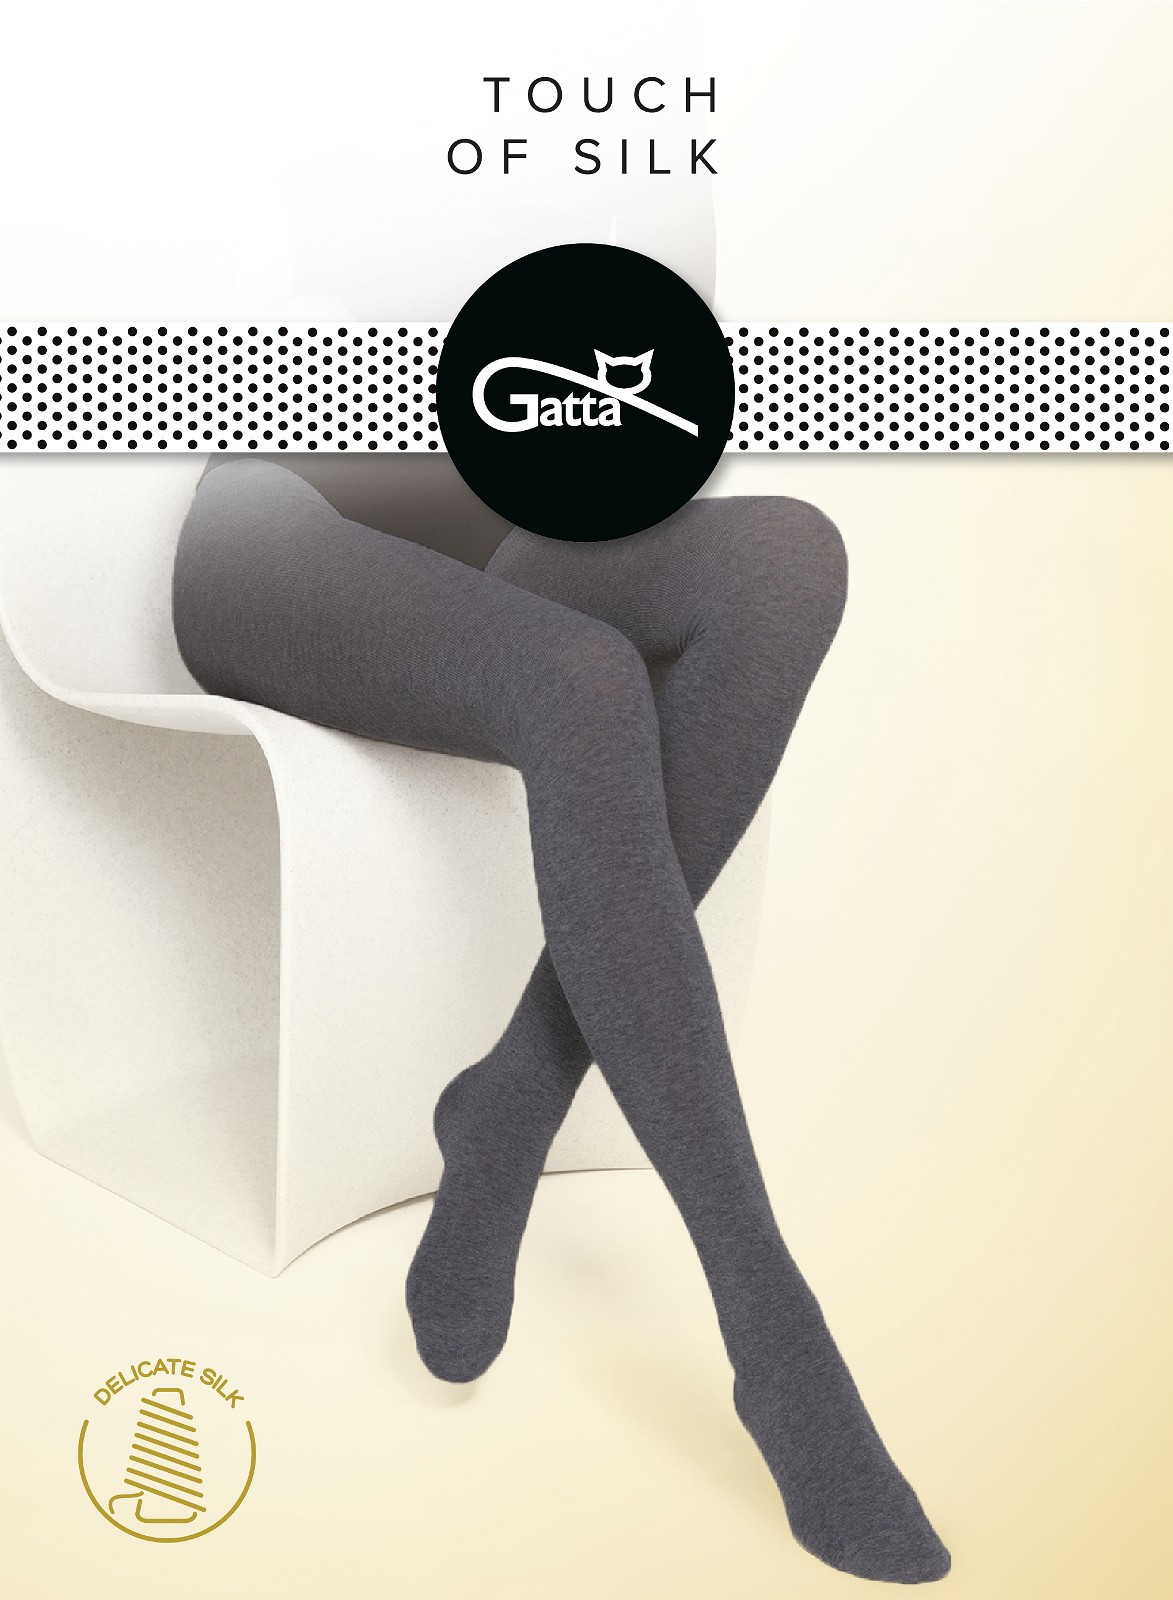 Dámské punčochové kalhoty Gatta Touch of Silk Mel.džínovina 3-M